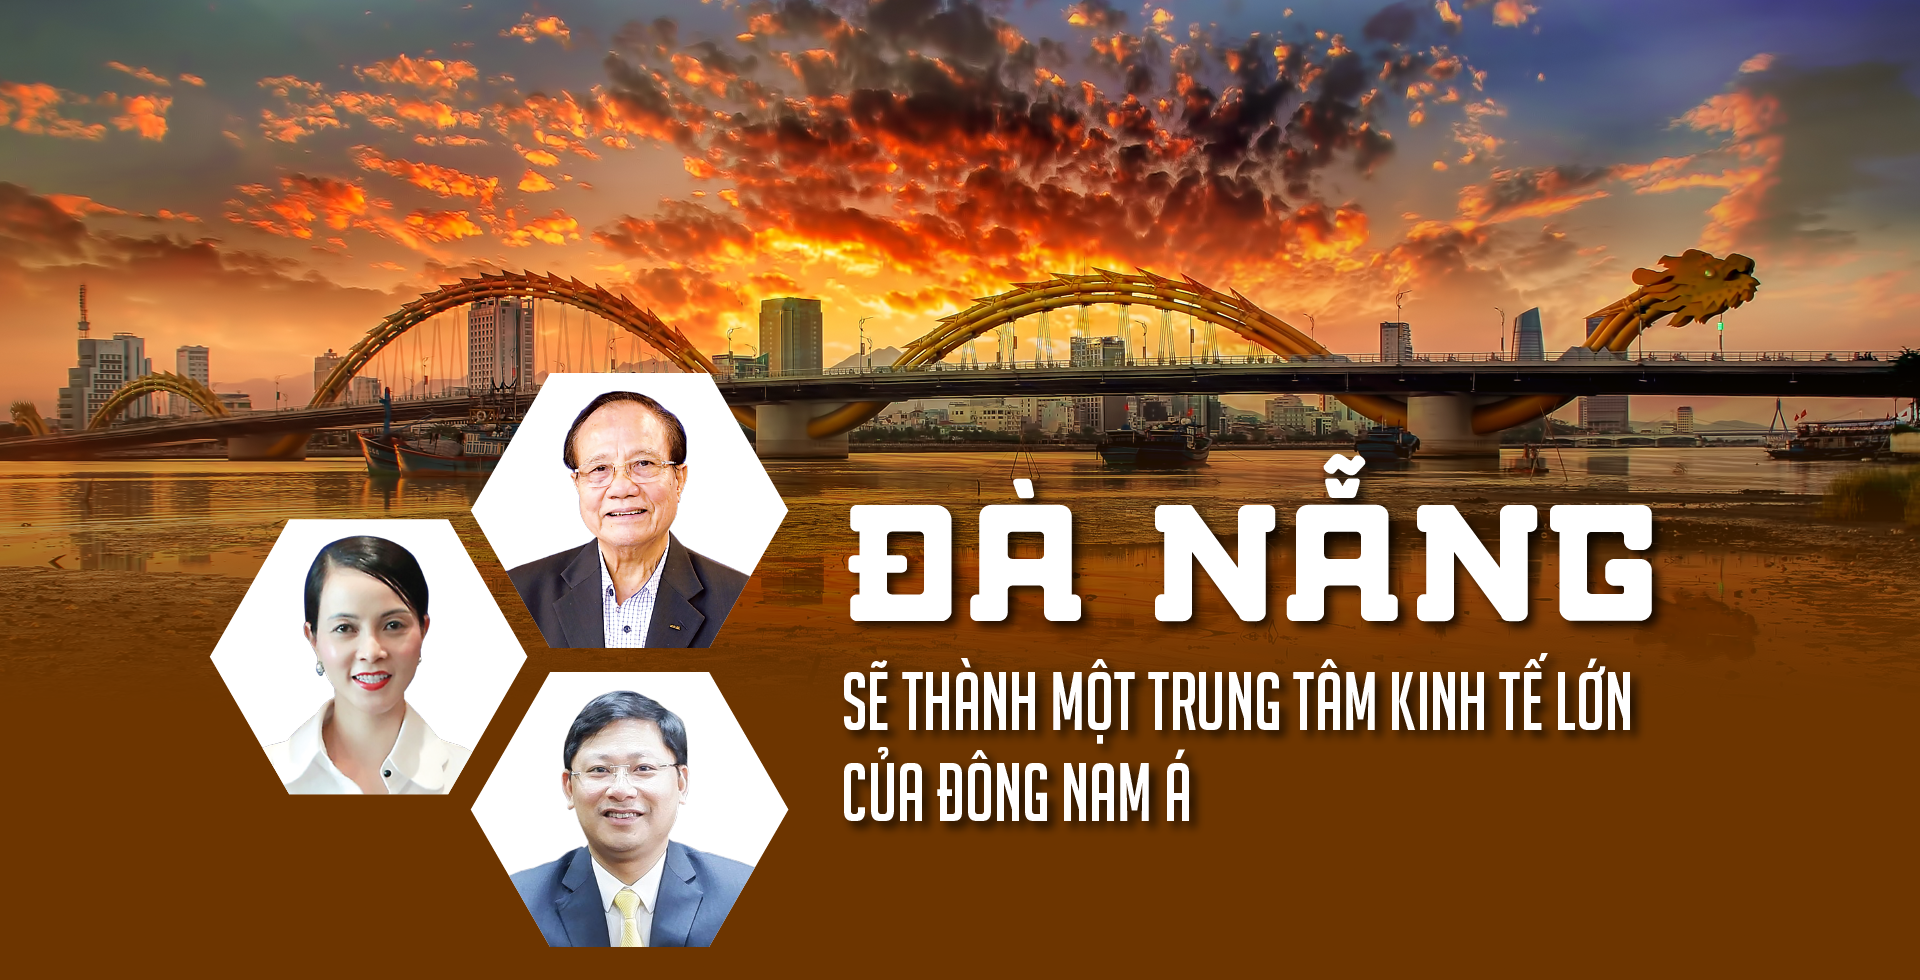 Đà Nẵng sẽ thành một trung tâm kinh tế lớn của Đông Nam Á - Ảnh 1